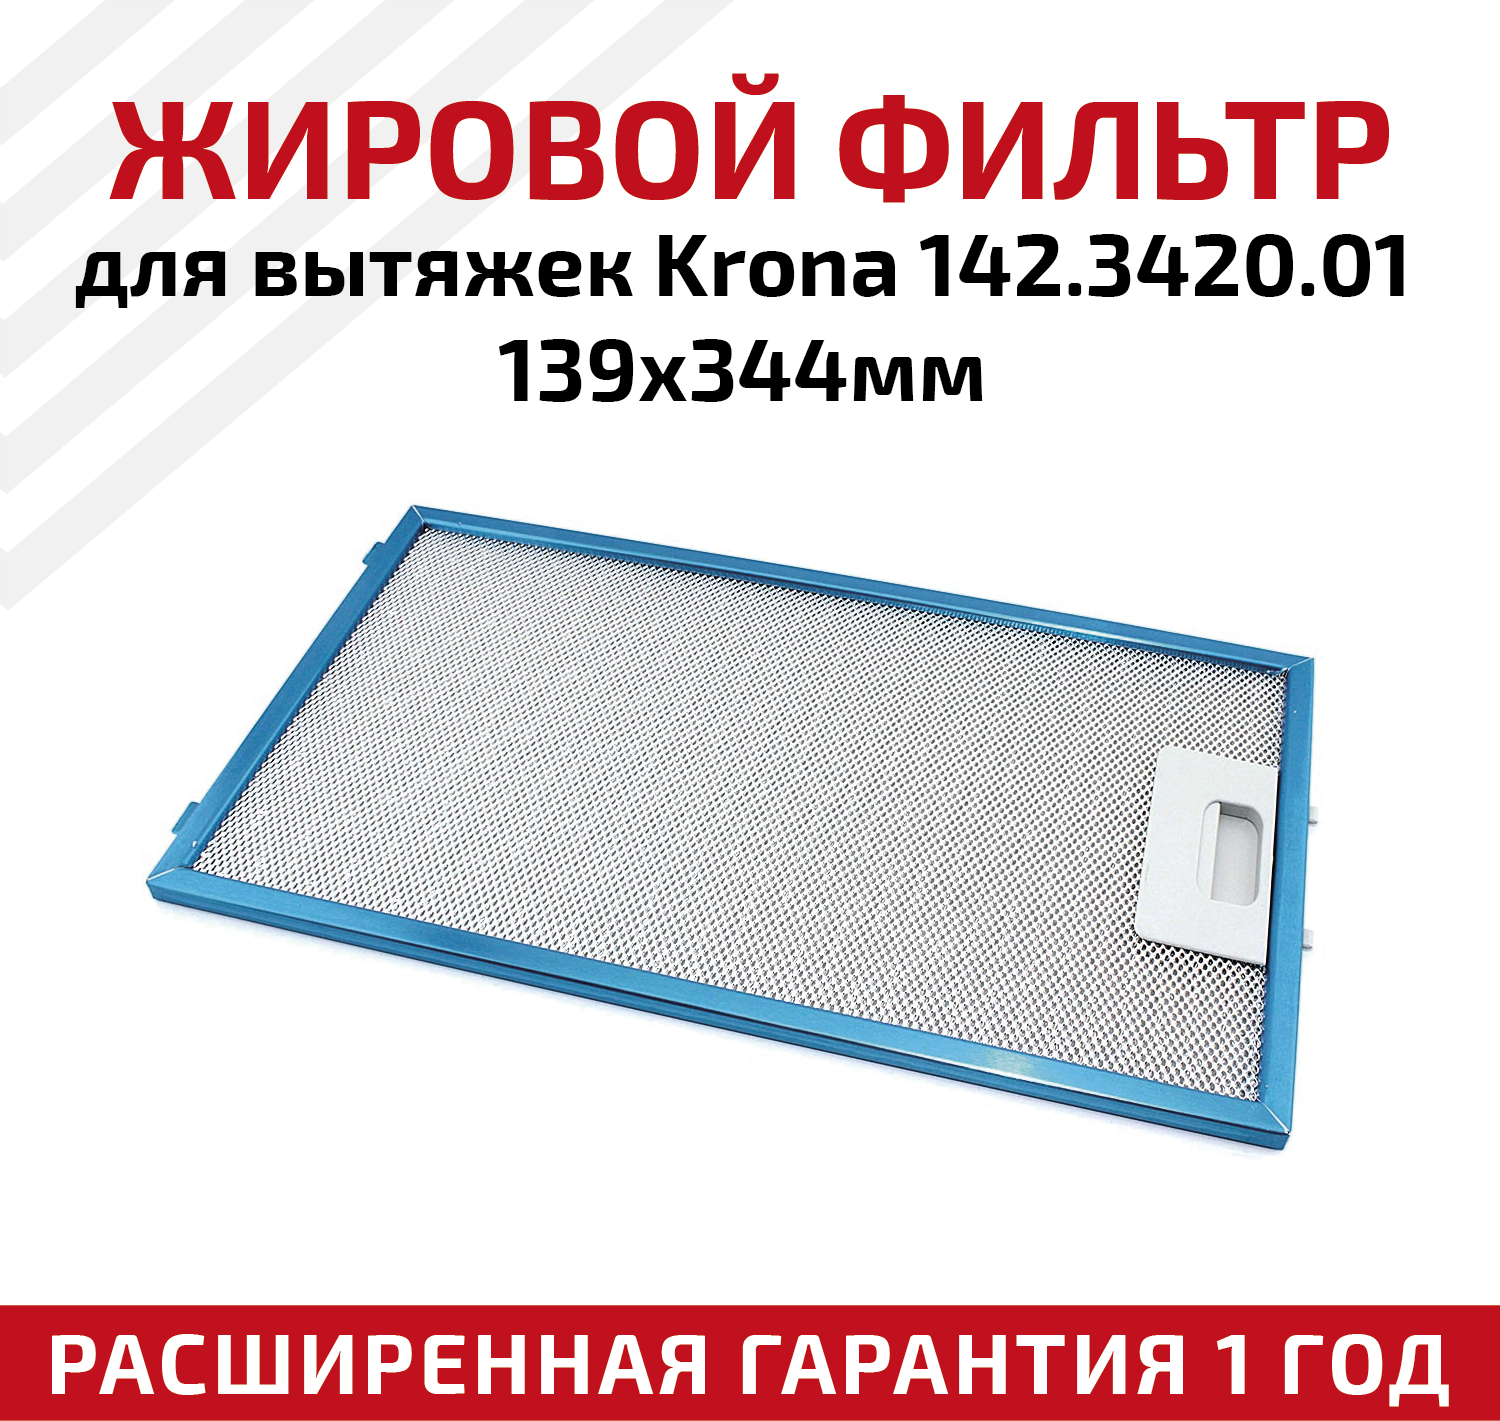 Жировой фильтр (кассета) алюминиевый (металлический) рамочный для вытяжек Krona 142.3420.01, многоразовый, 139х344мм